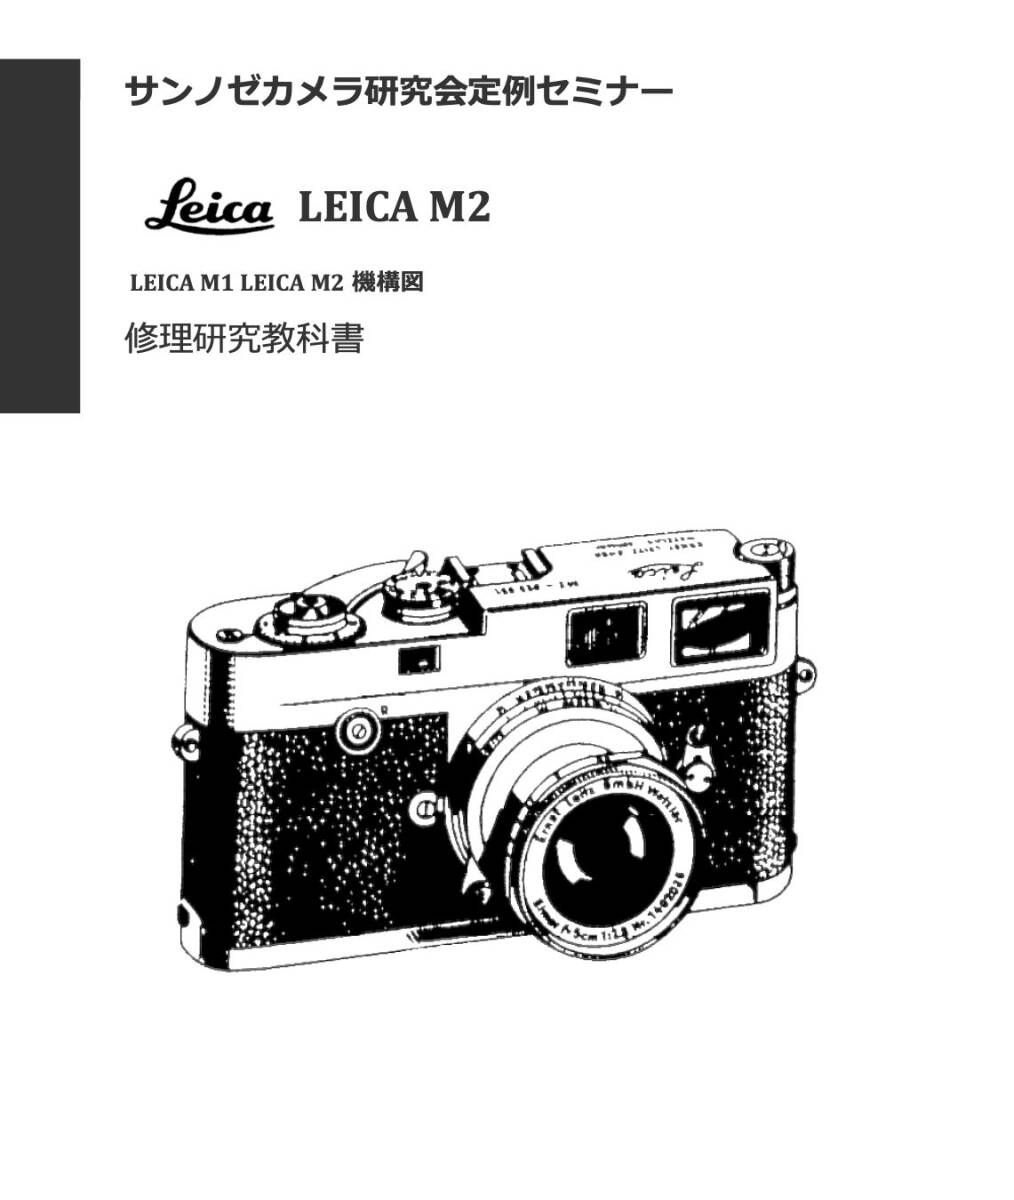 #2400086 Leica M2 ремонт изучение учебник все 126 страница ( камера ремонт камера ремонт )